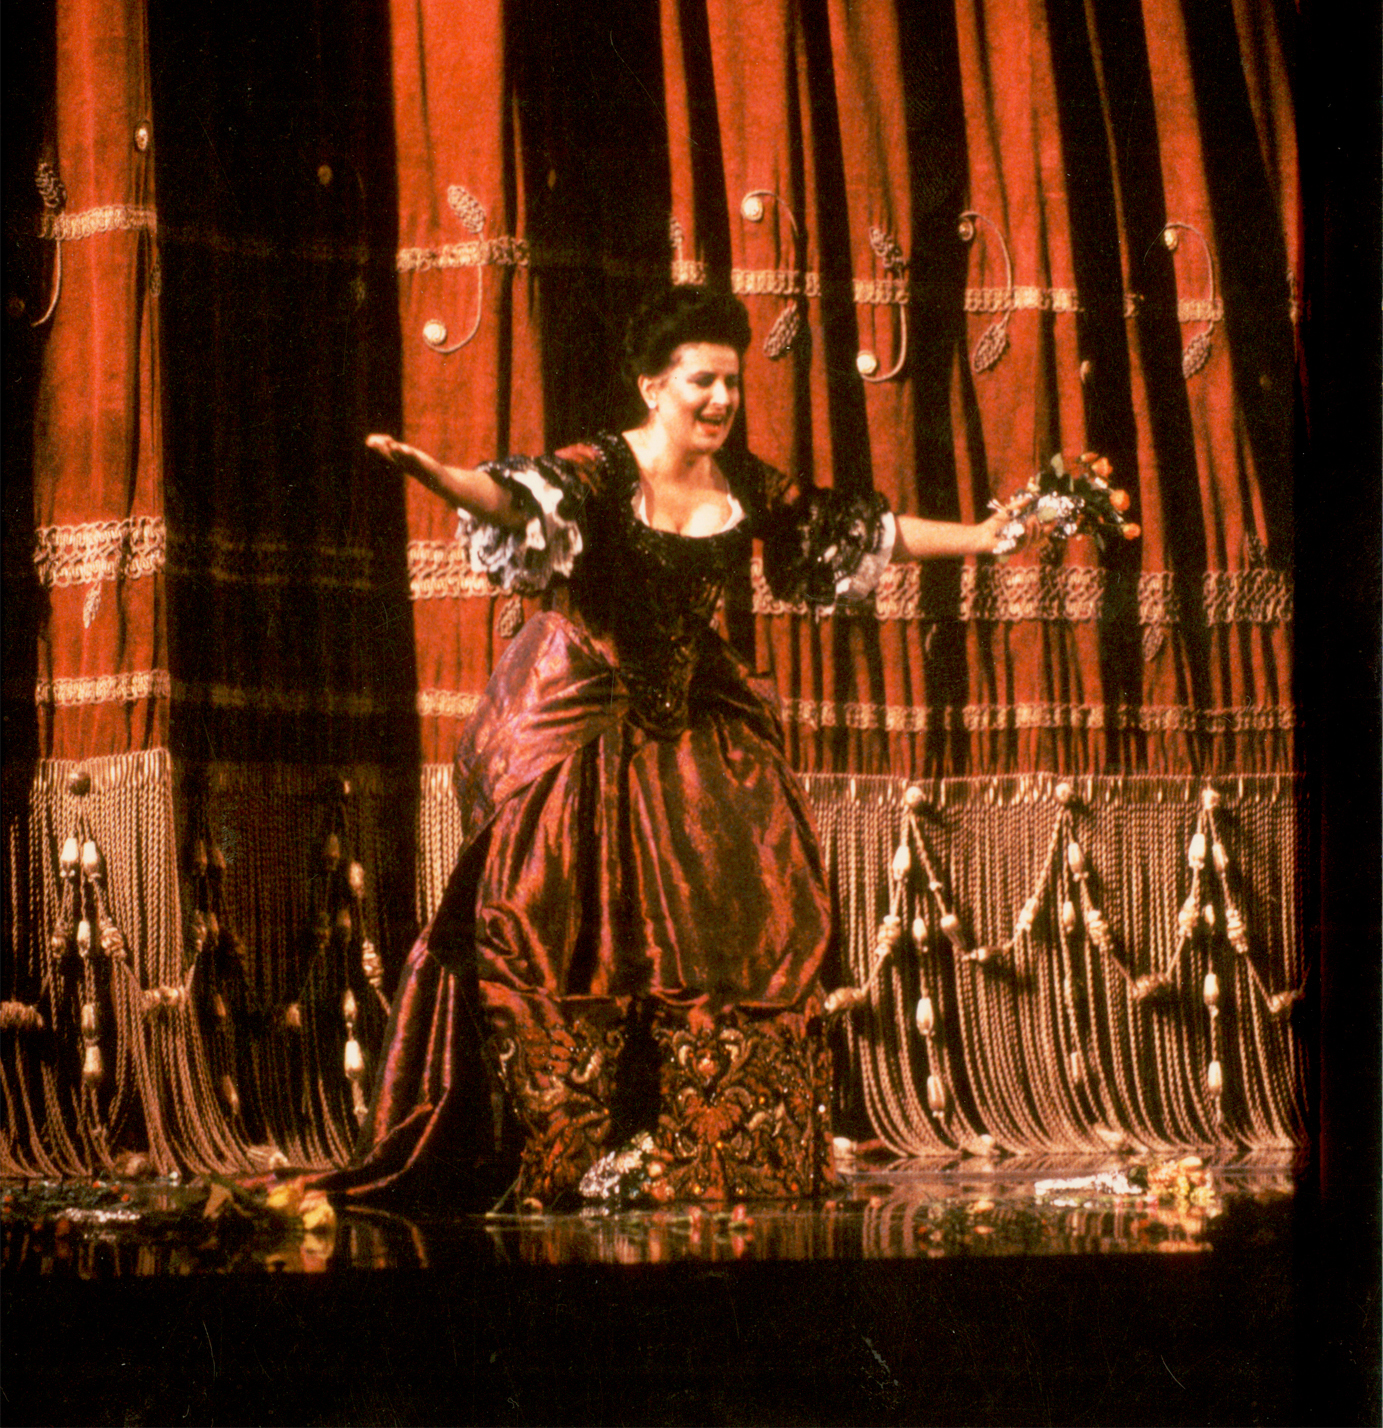 După senzaţionala sa interpretare a rolului Donna Elvira, o adevărată ploaie de flori venind din balcoanele teatrului încununează triumful sopranei